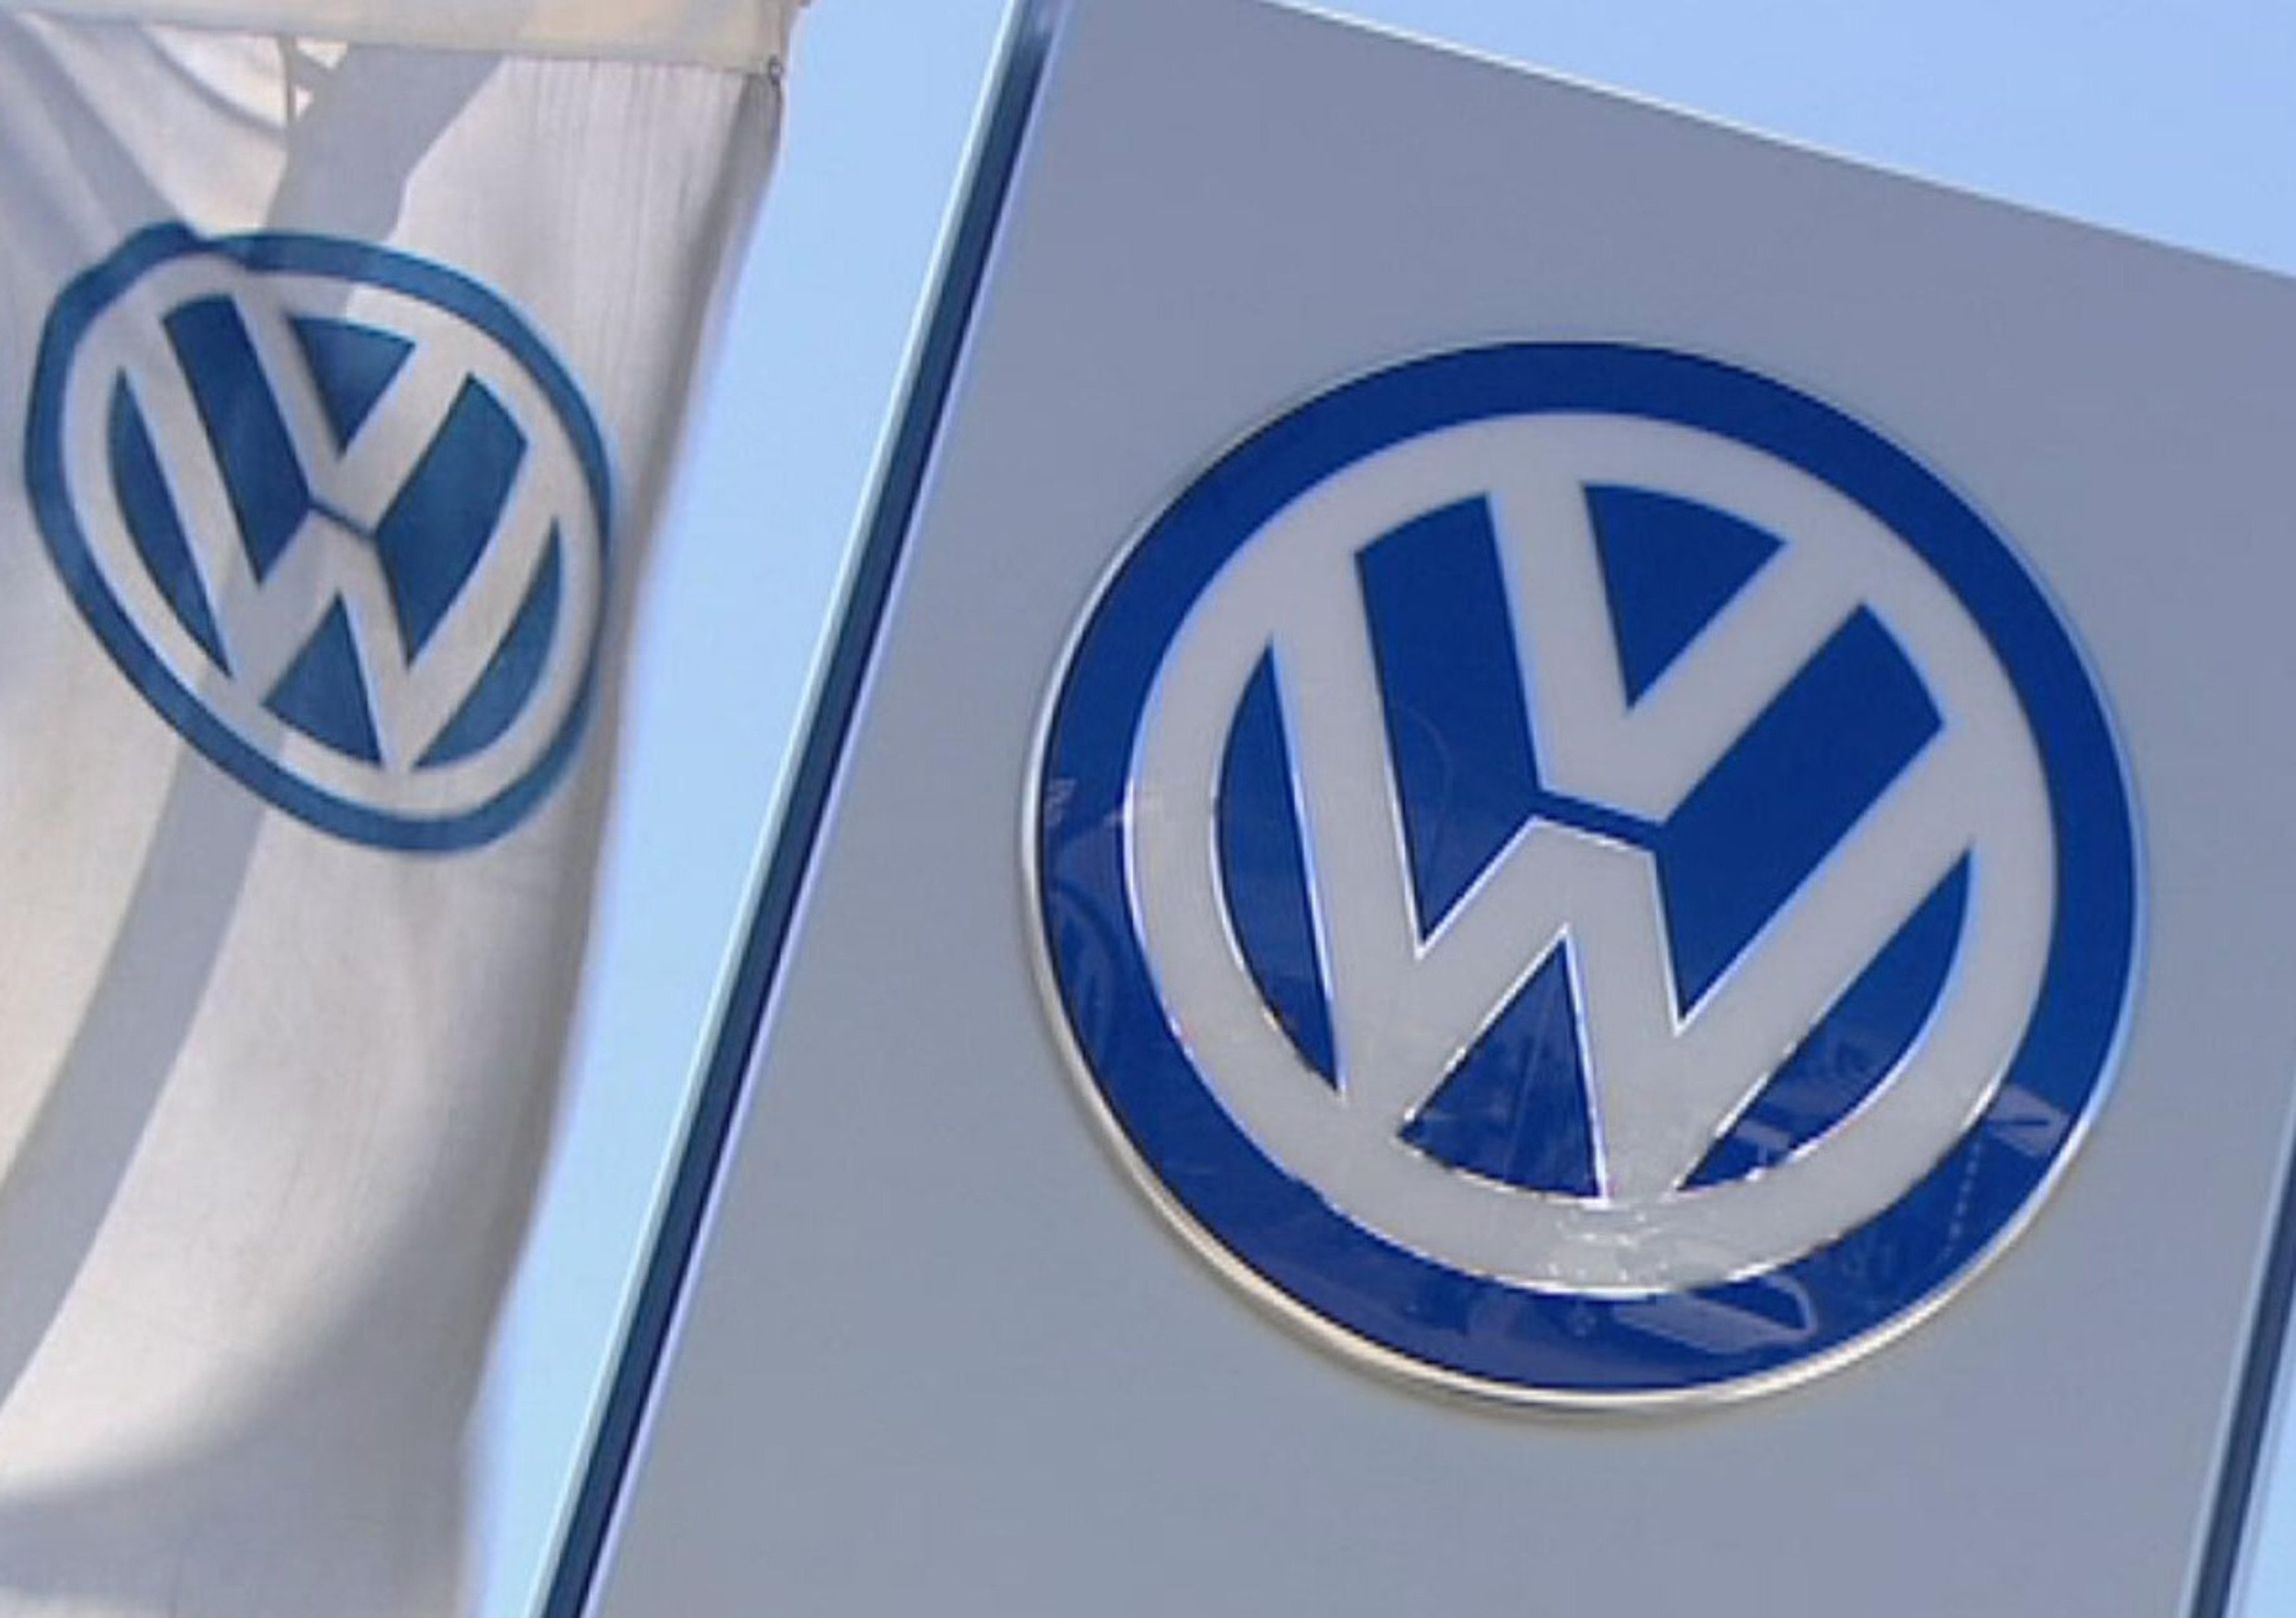 VW-Altroconsumo, &egrave; scontro sulla class action per i diesel da richiamare